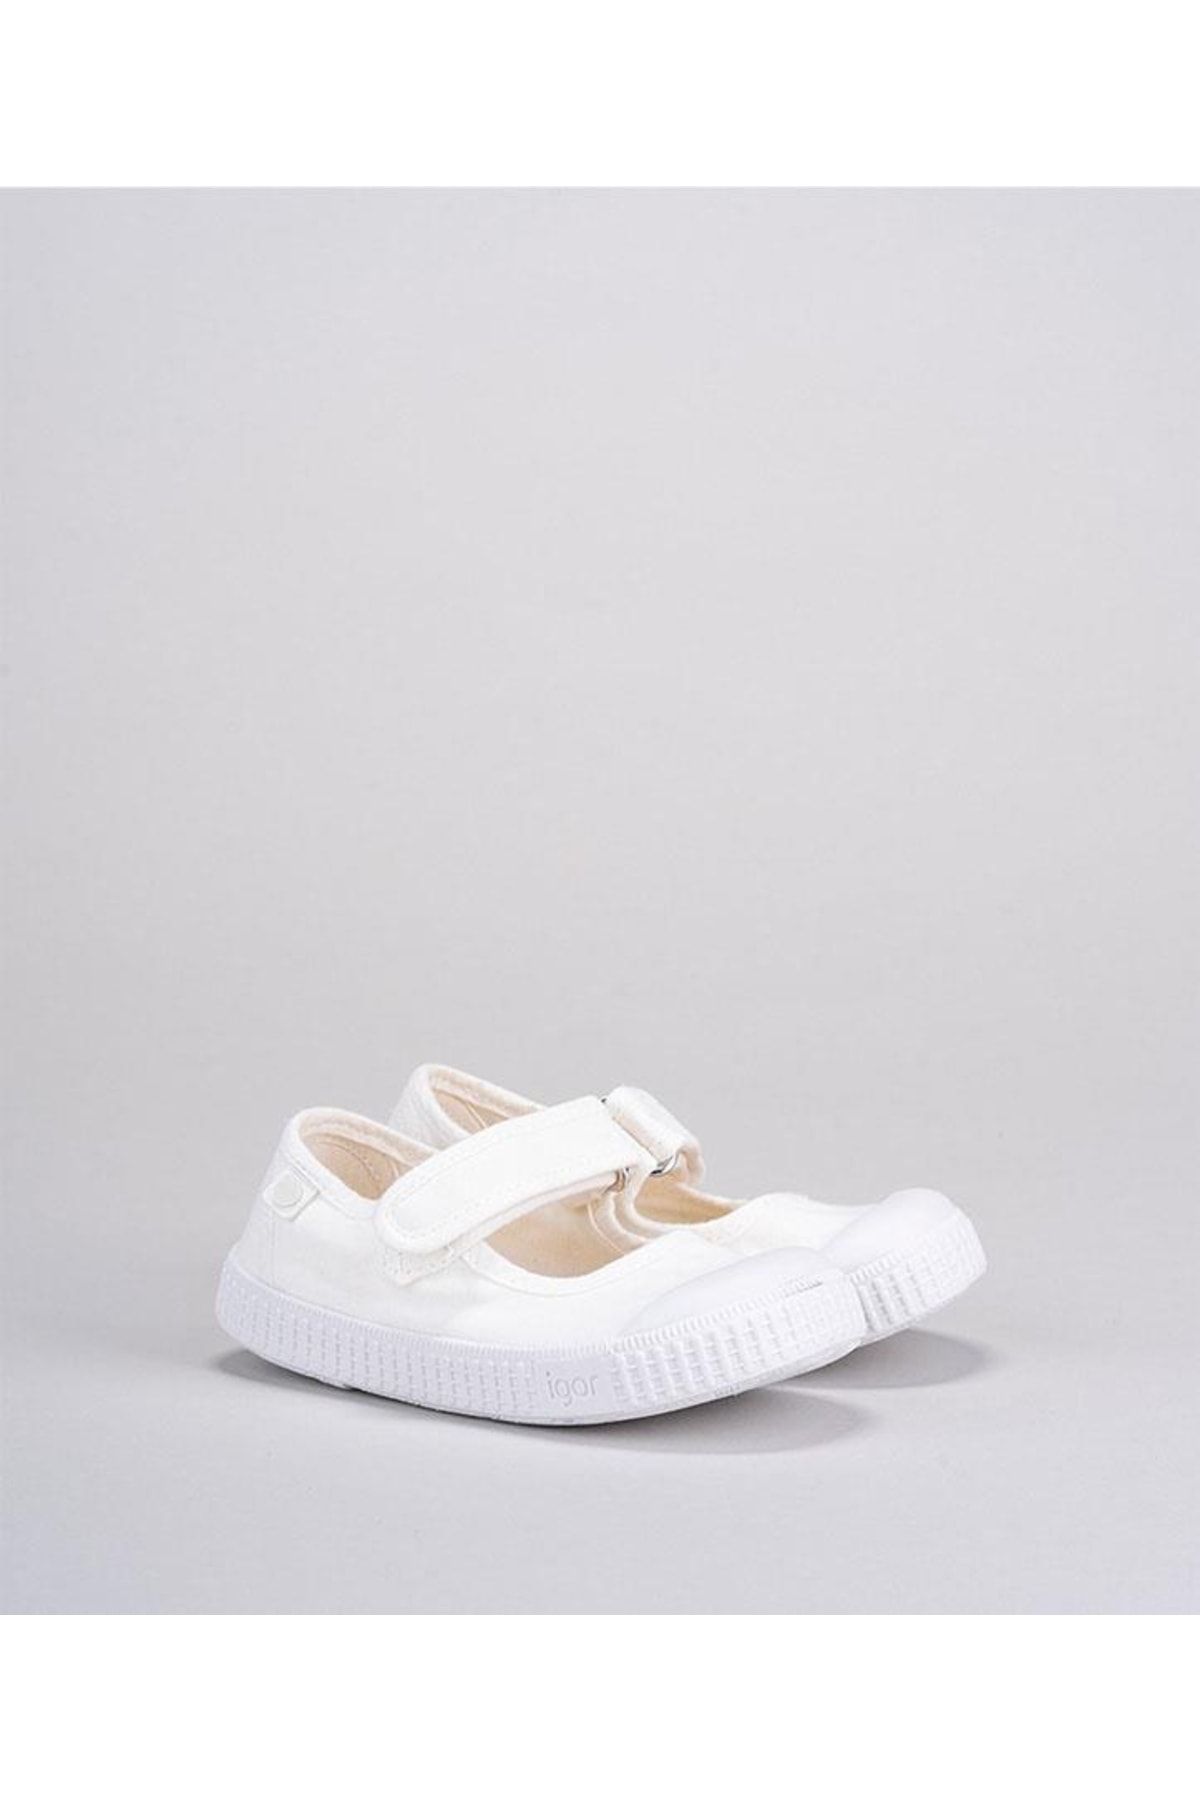 IGOR Irene Blanco White Çocuk Ayakkabısı S10182-001